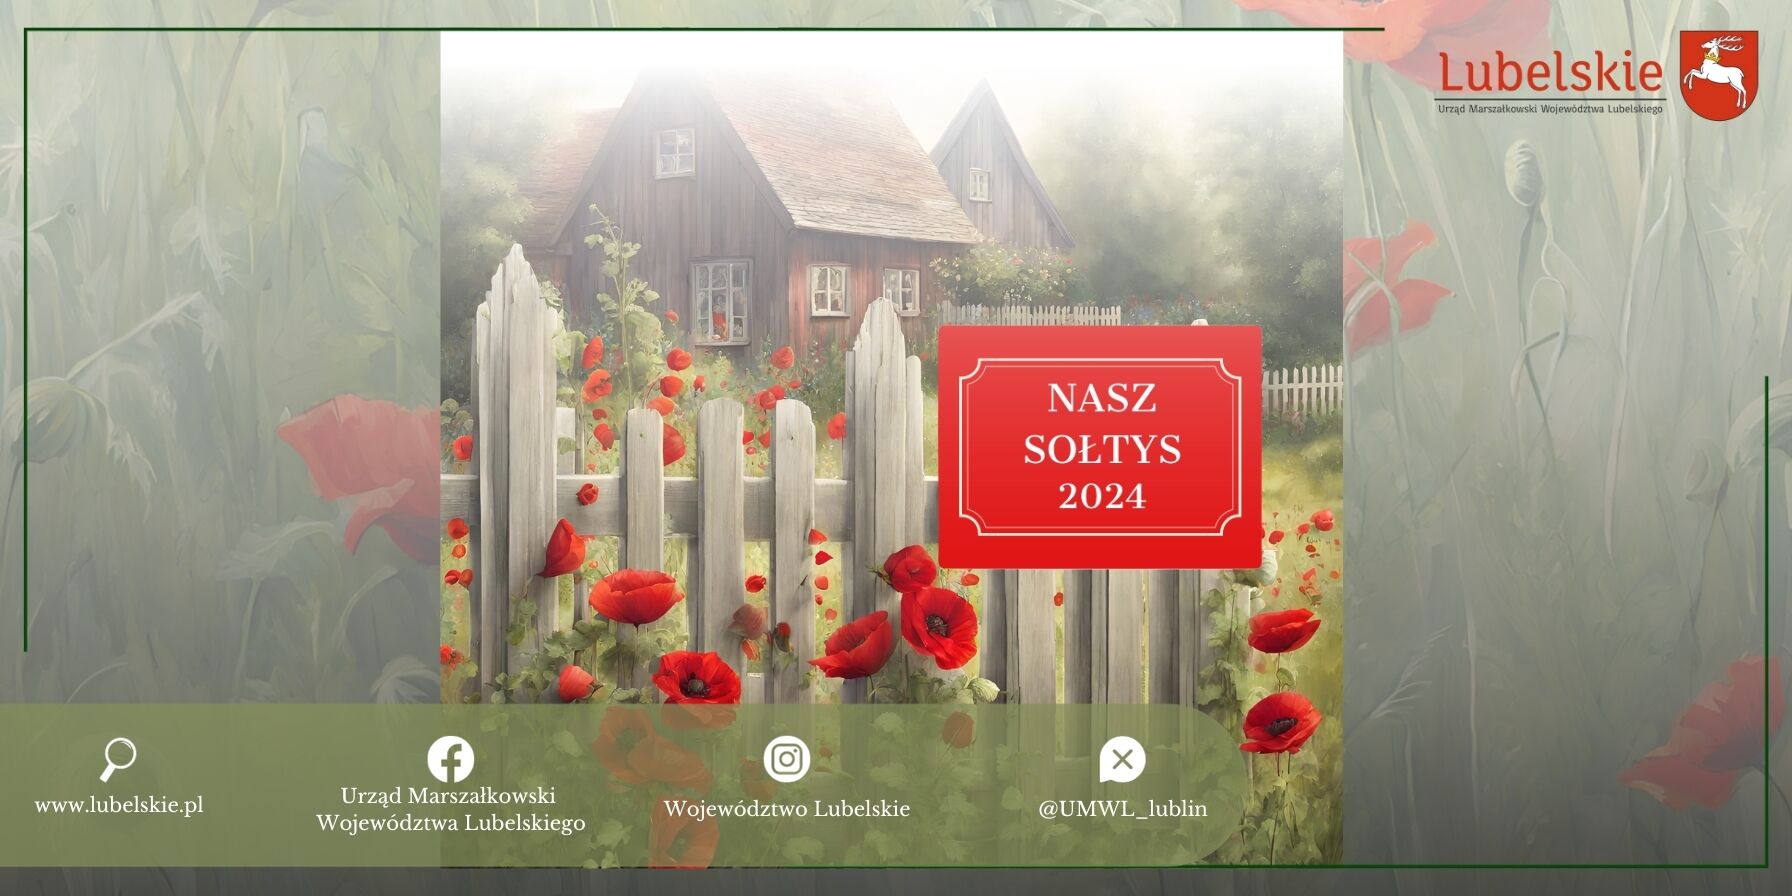 Alt: Grafika promująca "Nasz Sołtys 2024" z obrazem idyllicznej, wiejskiej sceny z drewnianym domem, białym ogrodzeniem i czerwonymi makami na pierwszym planie. Logo Lubelskiego i adresy internetowe na dole.